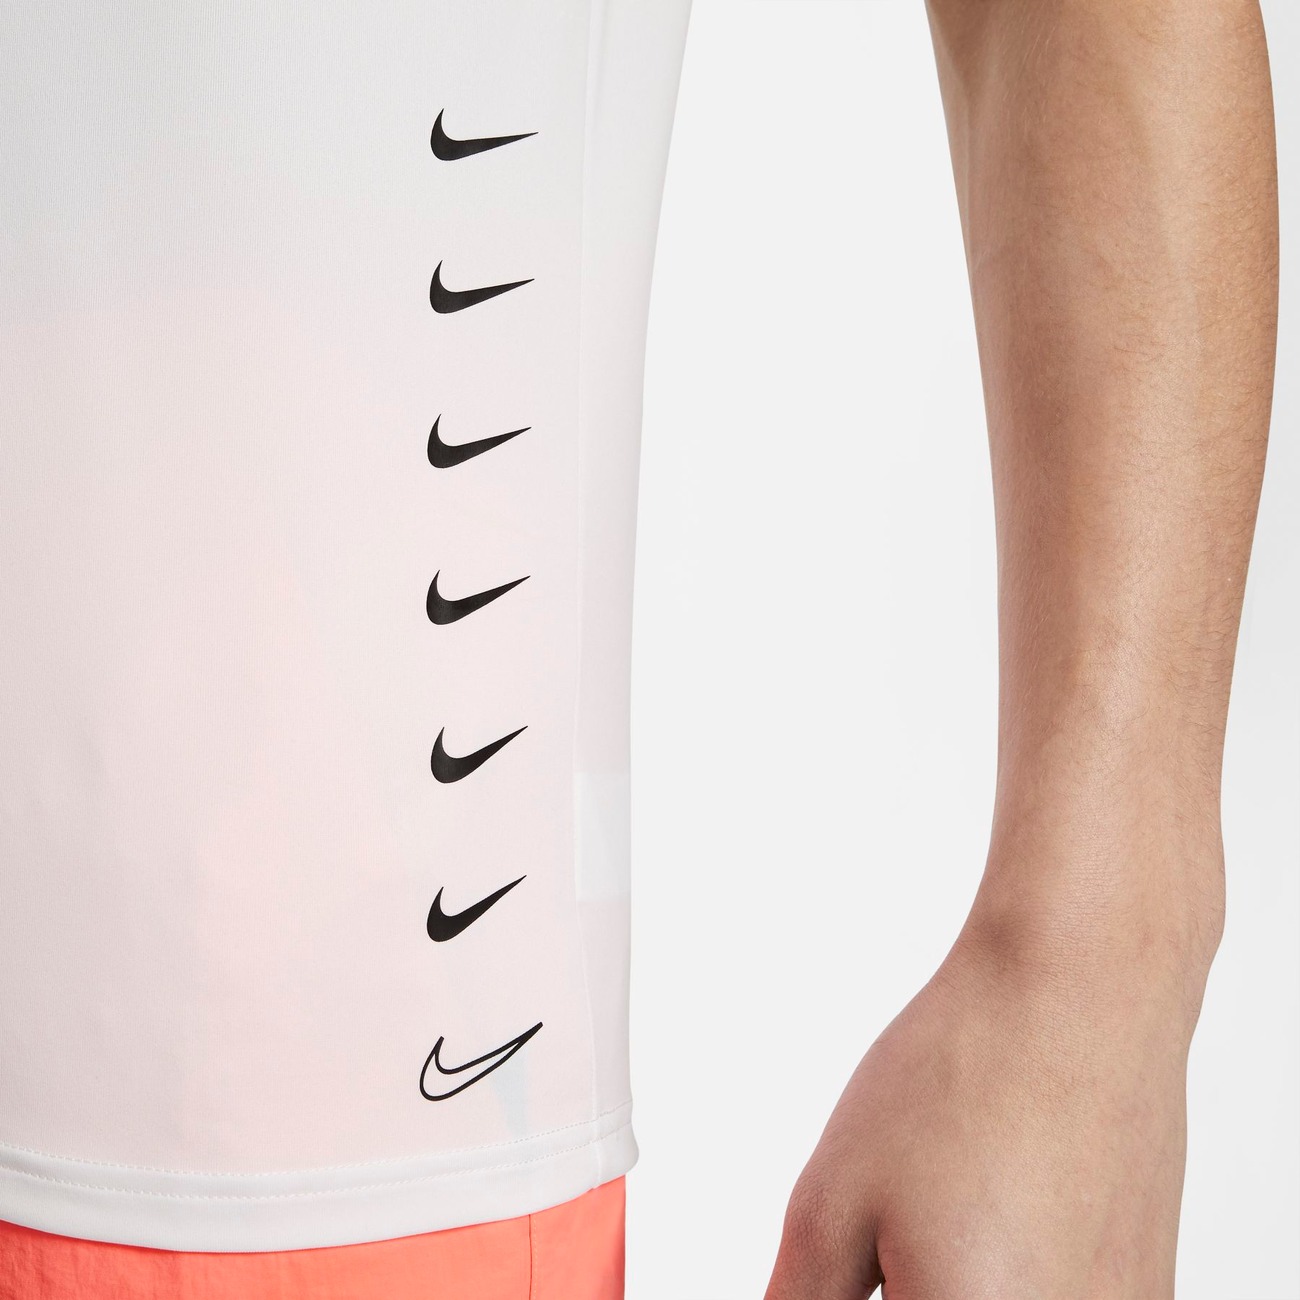 Camiseta Nike Hydroguard MultiSwoosh UV Masculina - Foto 5